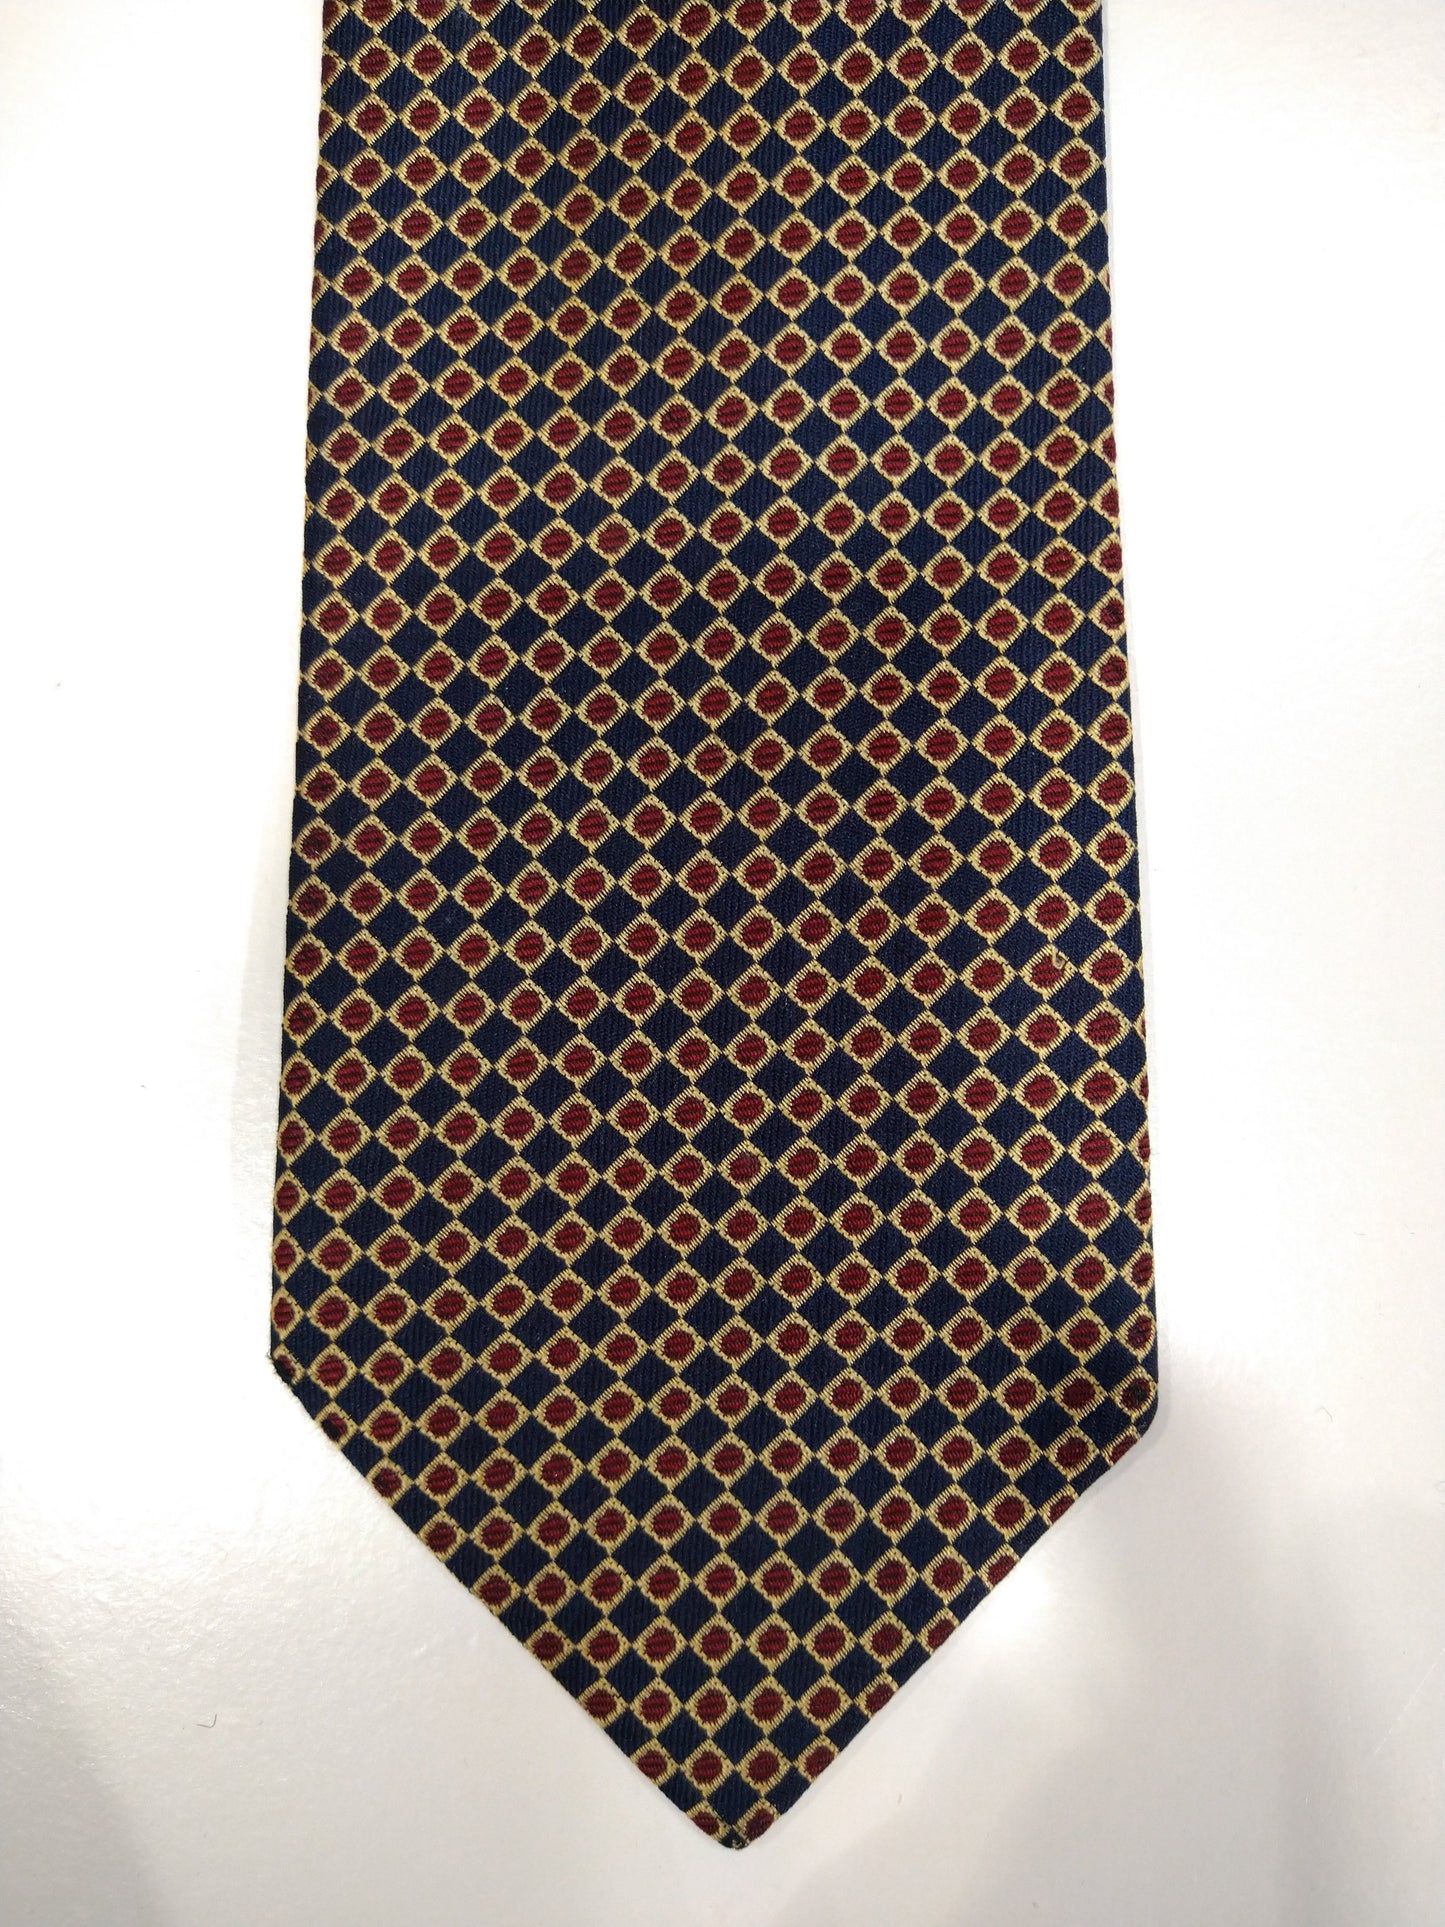 Cravate en soie vintage. Bleu avec motif de boules or / rouge.